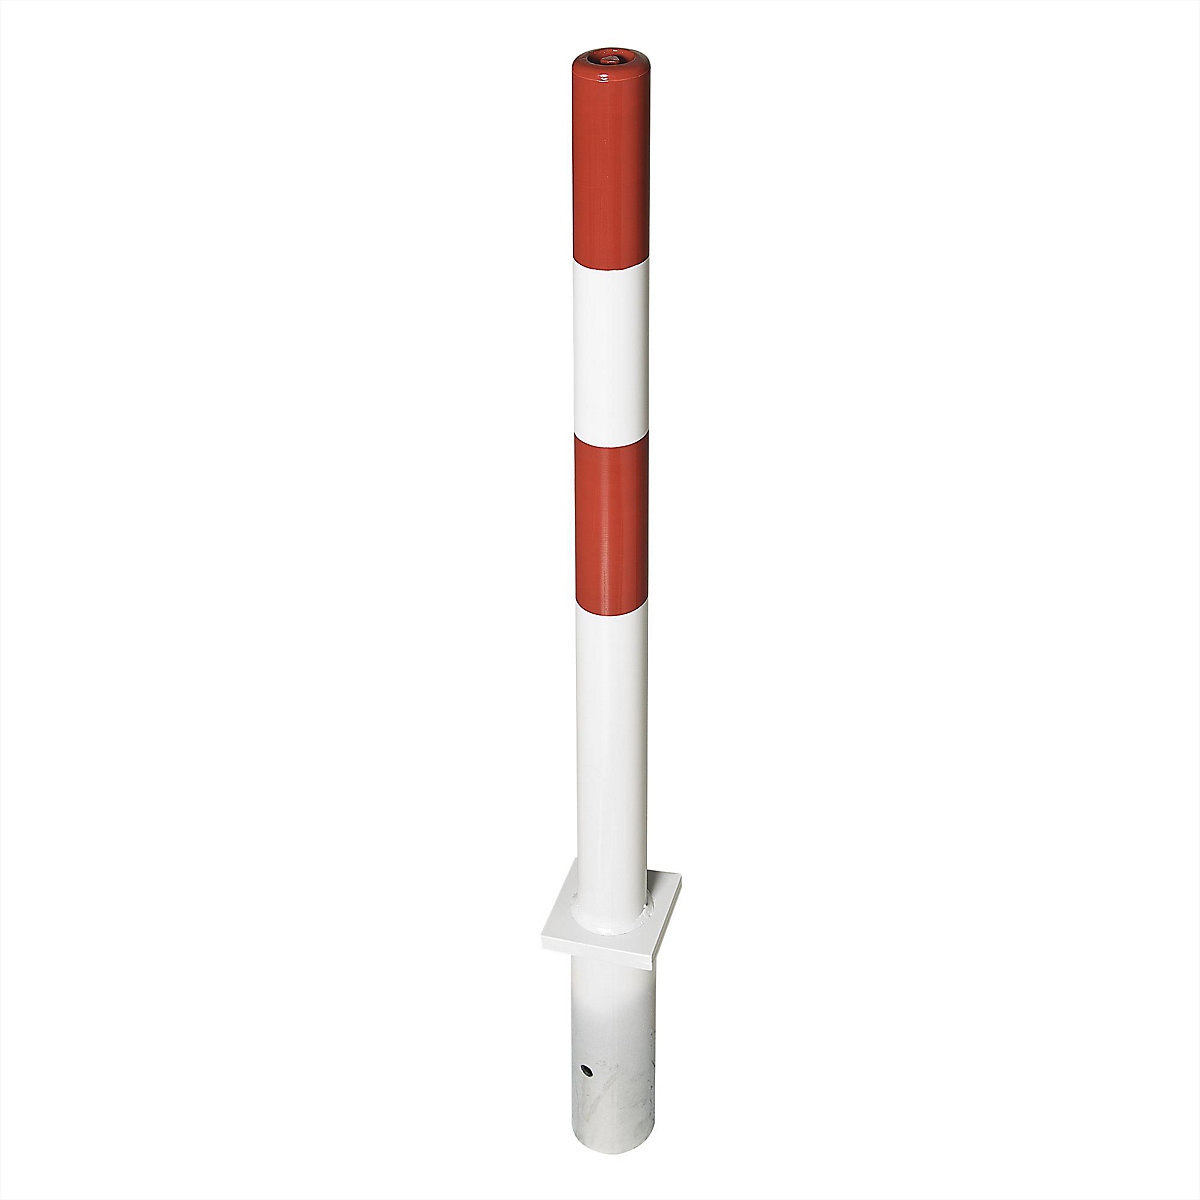 Čelični stup za ograđivanje, za betoniranje, Ø 76 mm, u crveno-bijeloj boji, 2 ušice lanaca-6